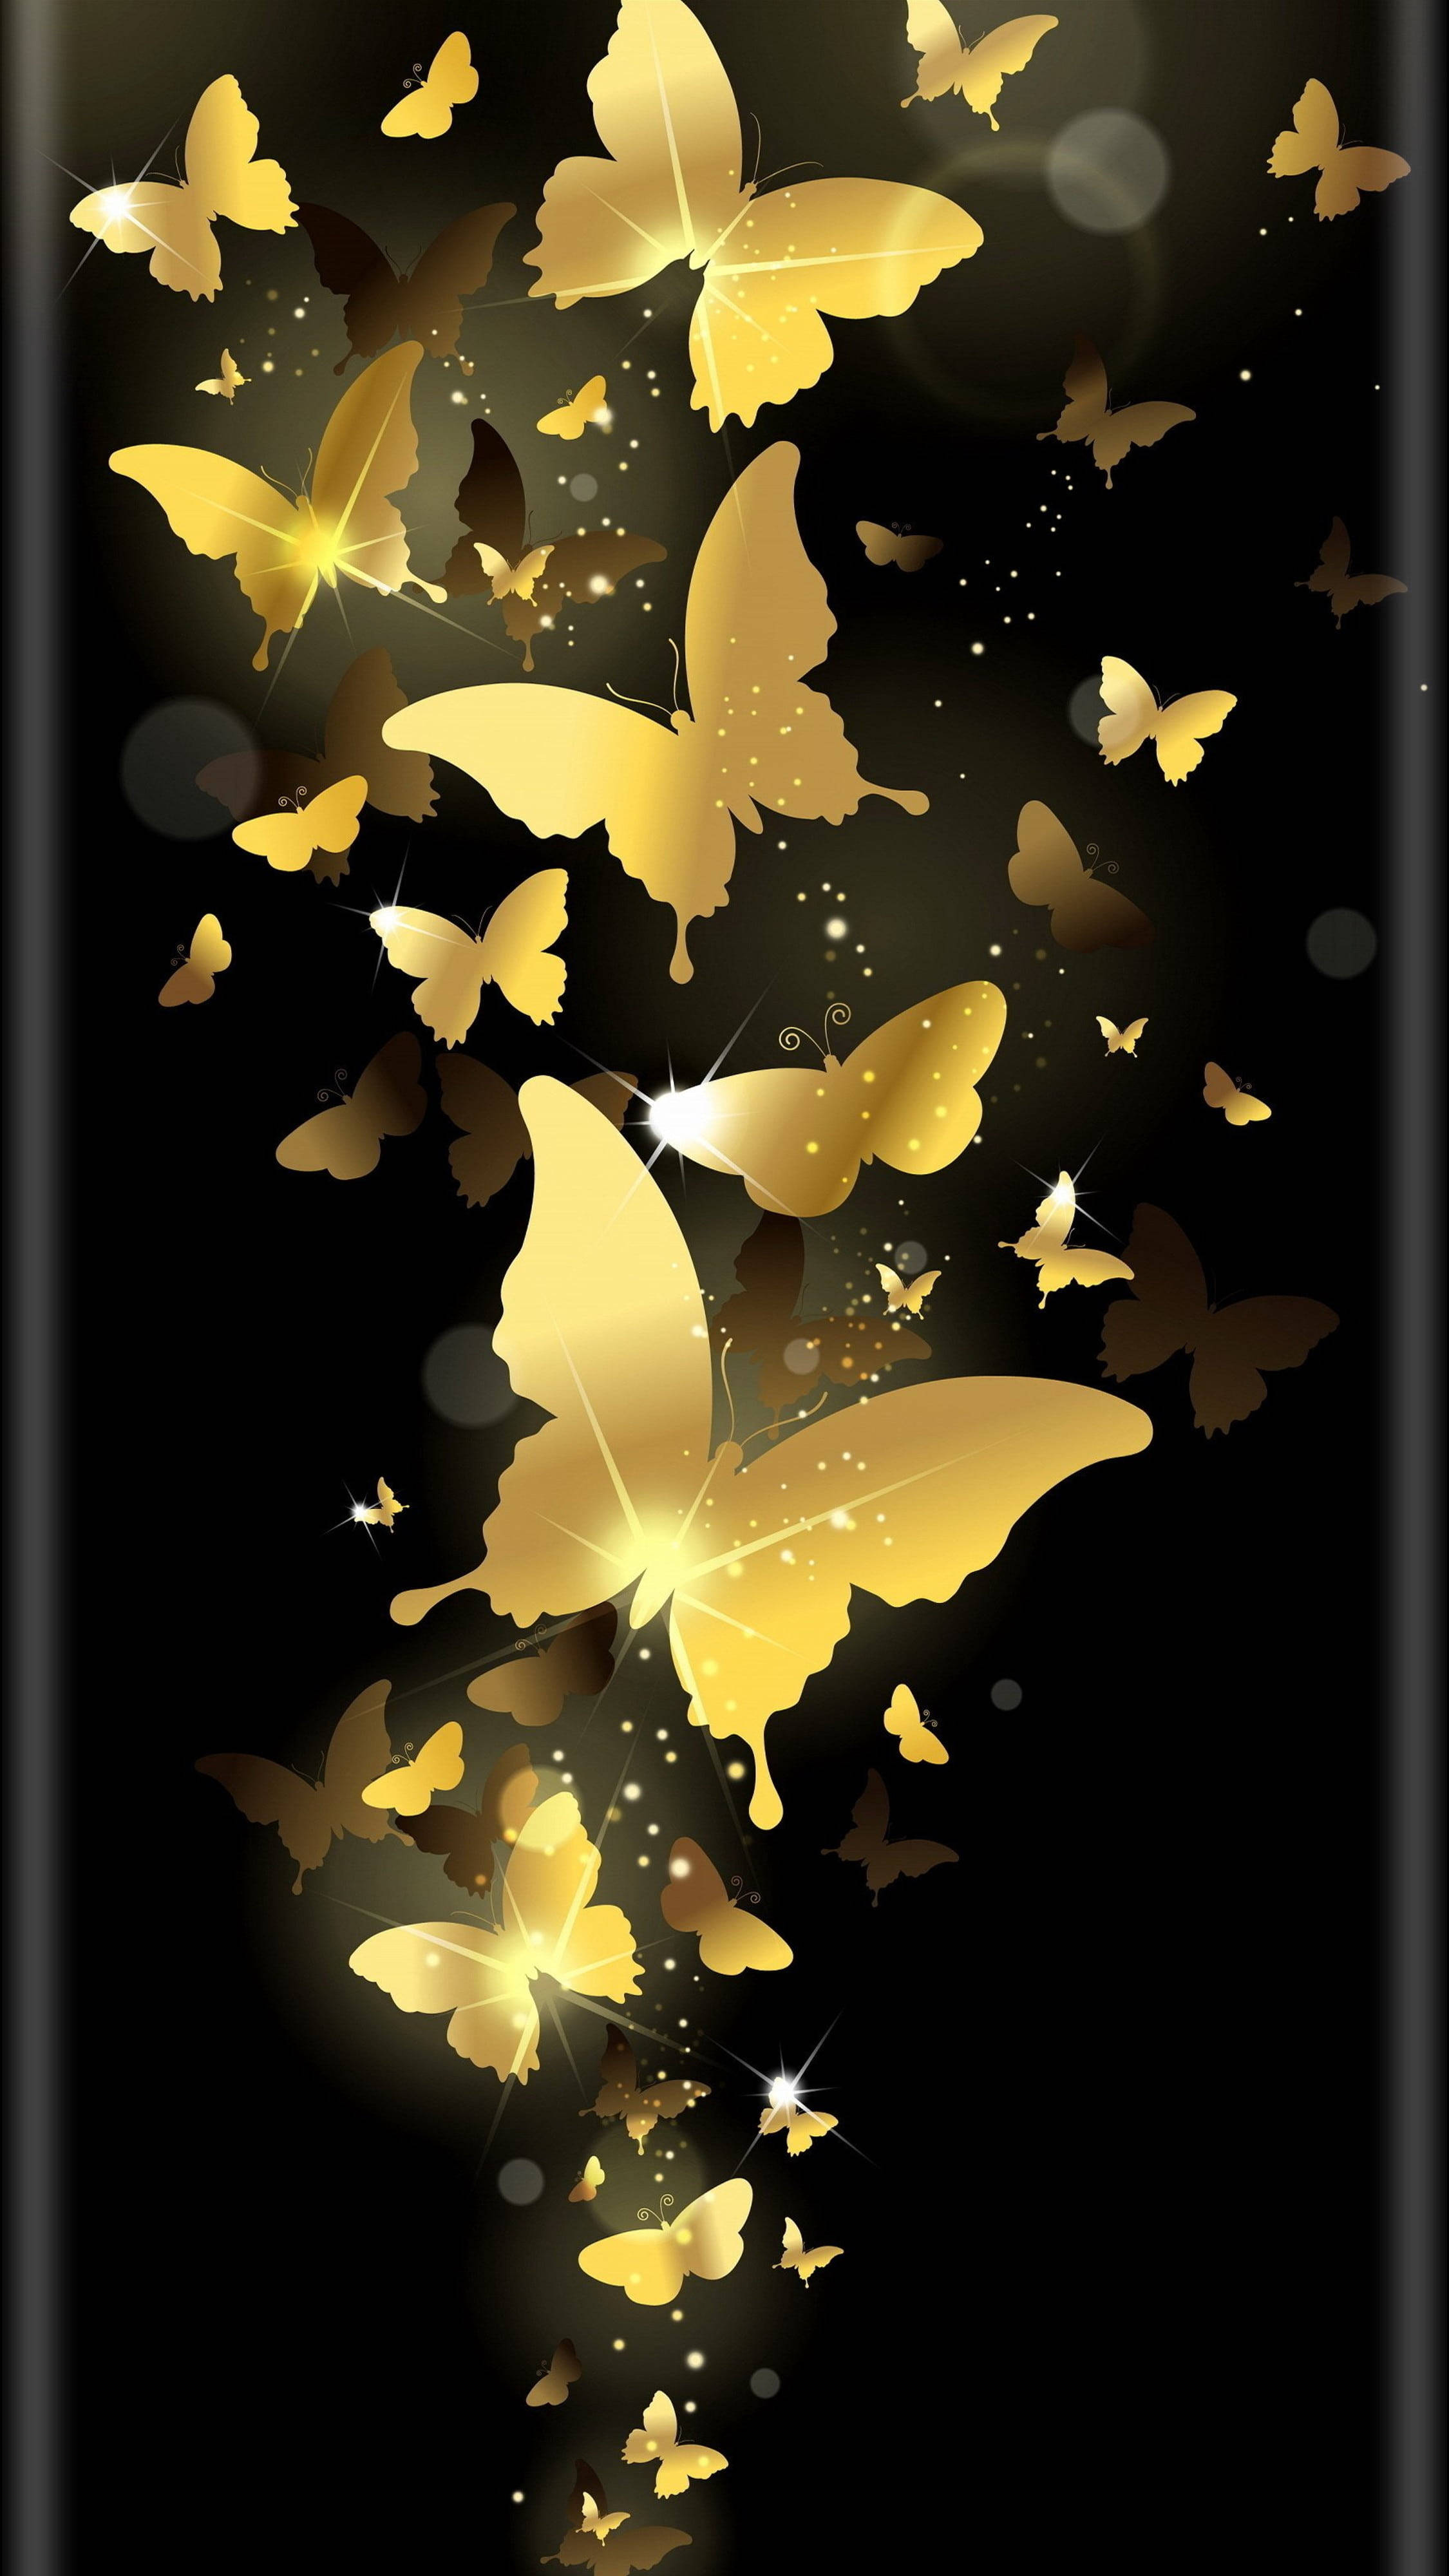 Фон главный экран телефона. Красивый фон на телефон. Фотообои телефон. Заставка бабочки. Стильные обои на телефон.